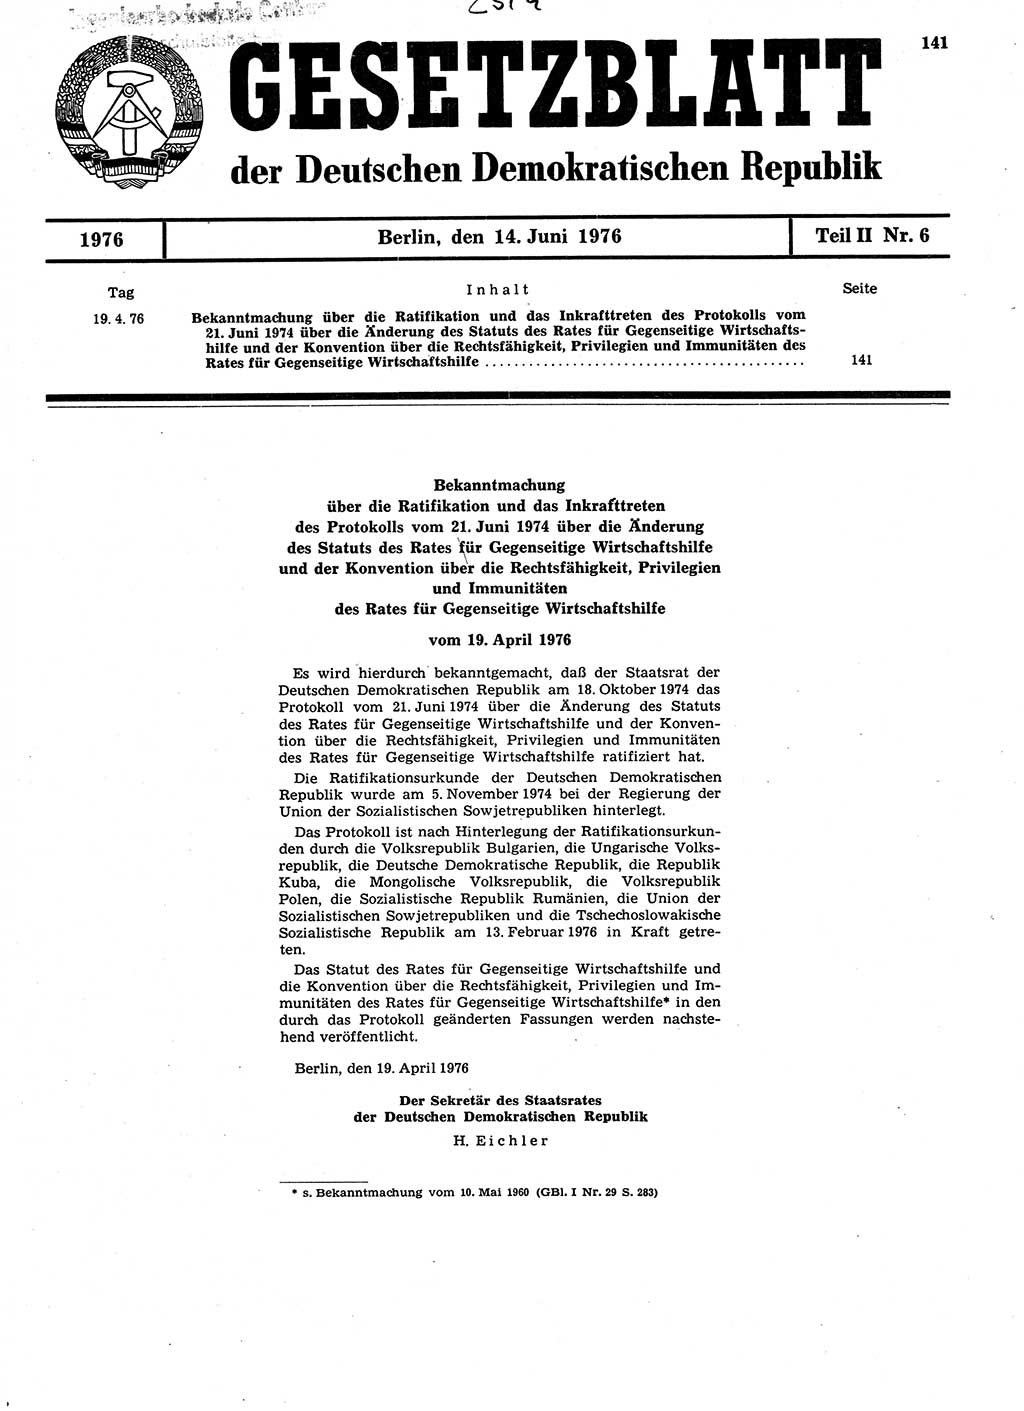 Gesetzblatt (GBl.) der Deutschen Demokratischen Republik (DDR) Teil ⅠⅠ 1976, Seite 141 (GBl. DDR ⅠⅠ 1976, S. 141)